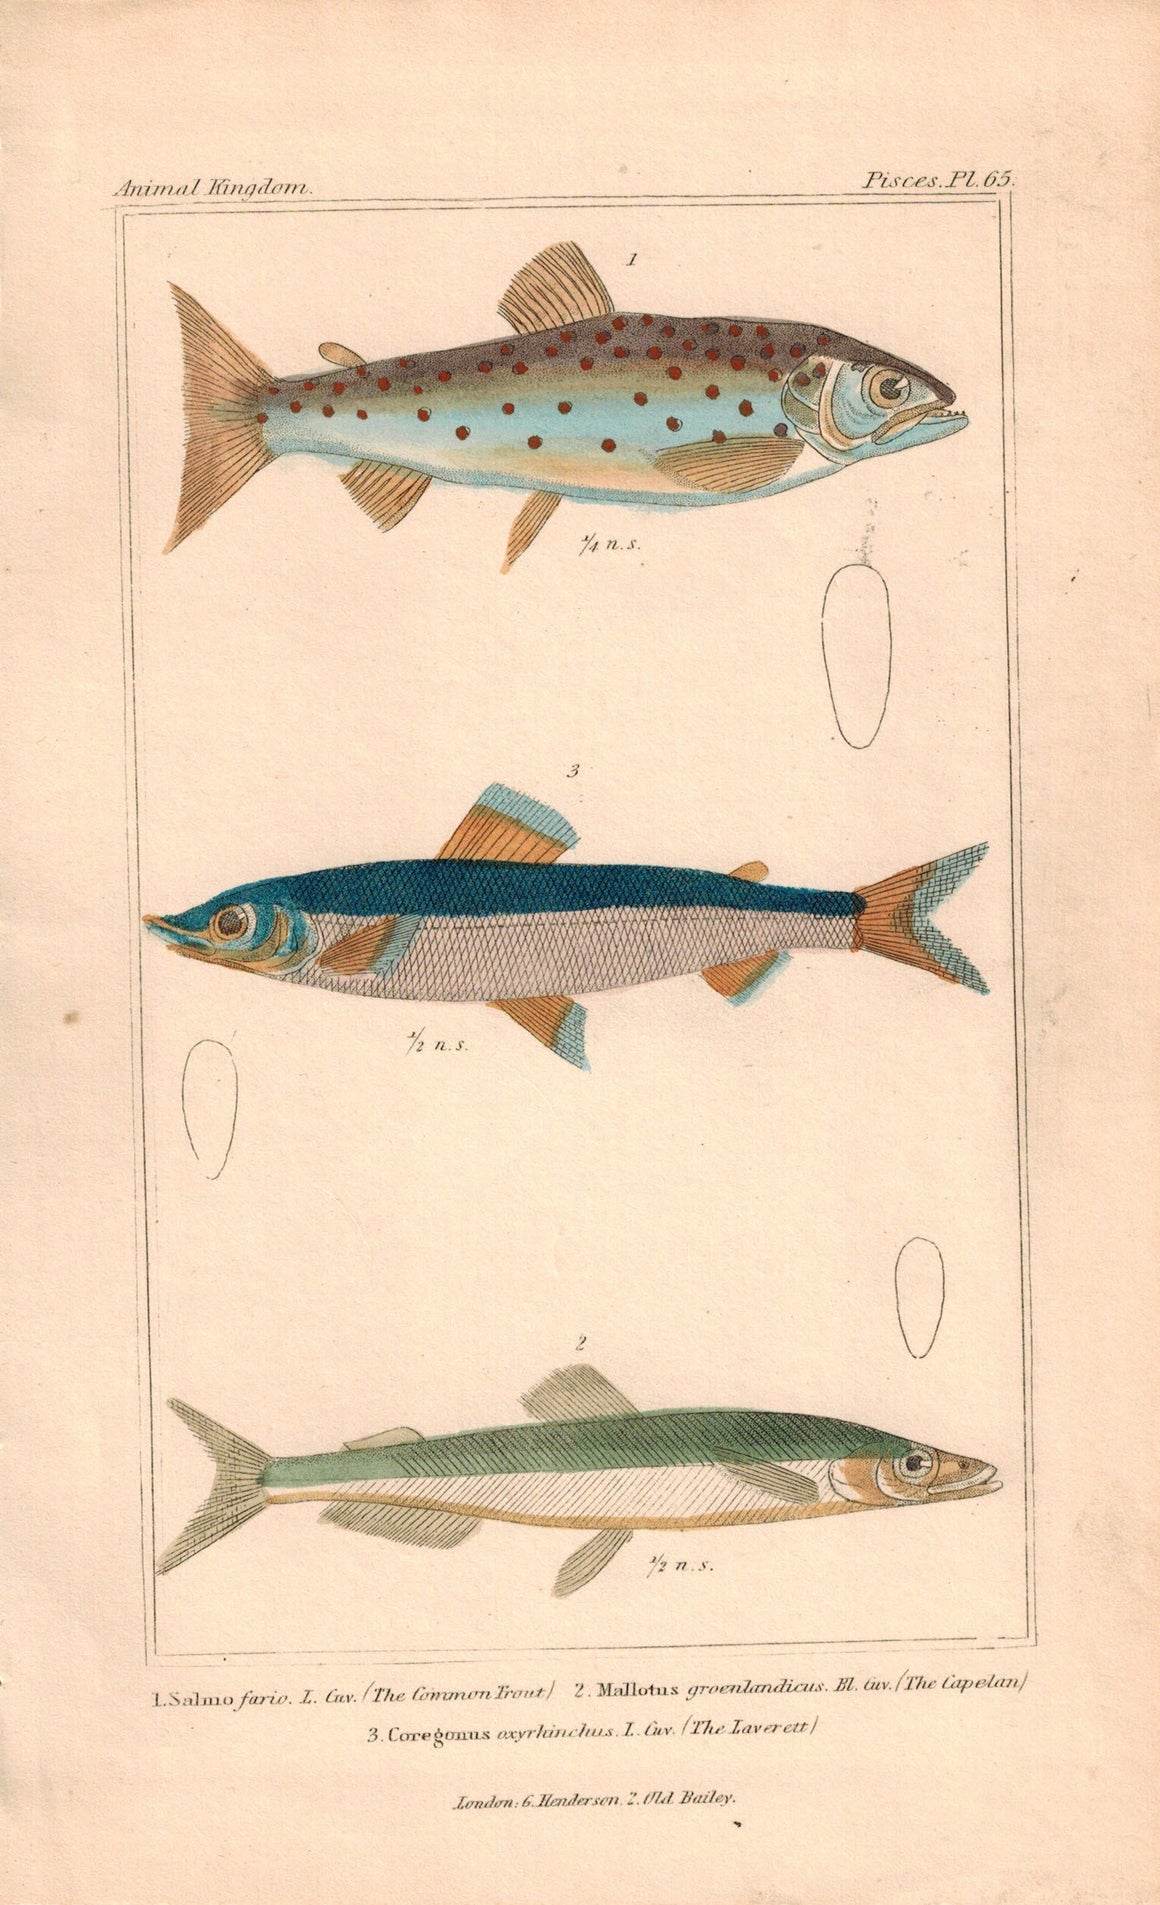 Trout, Capellan, Laverett Fish Print 1834 Engraved Antique Cuvier Plate 65